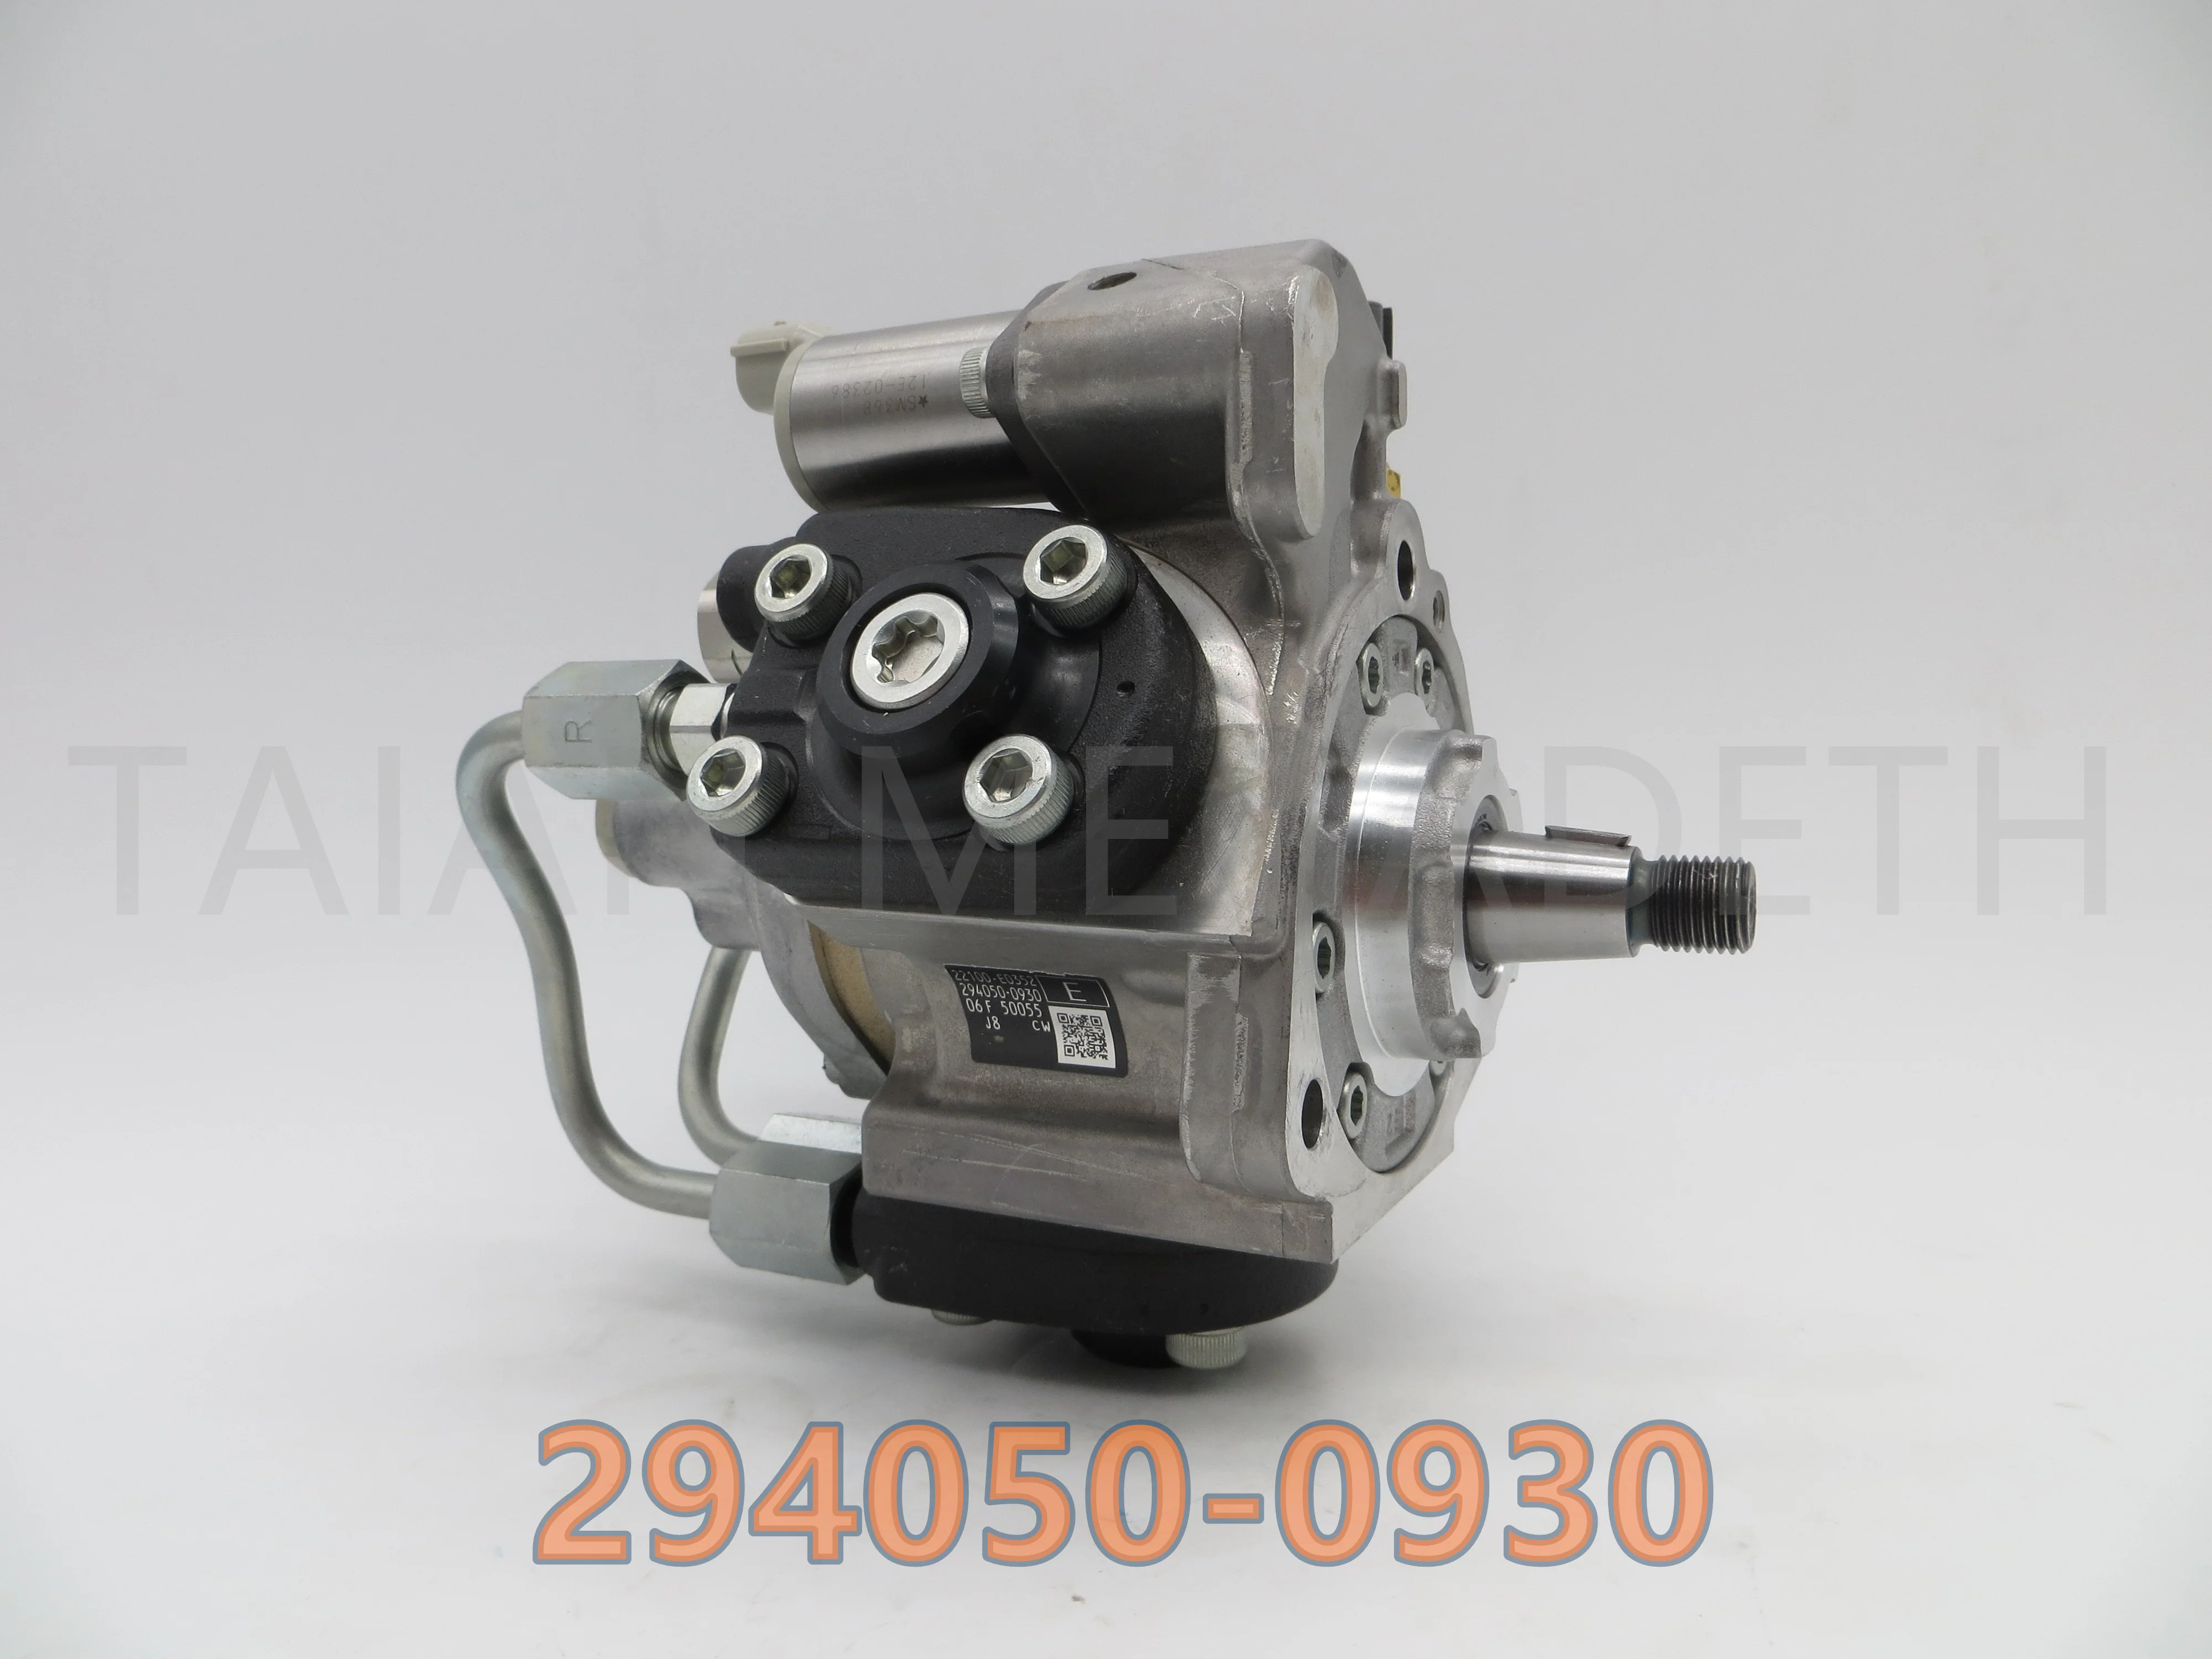 

Genuine Brand New Diesel Fuel Pump 294050-0930, 22100-E0350, 22100-E0351, 22100-E0352